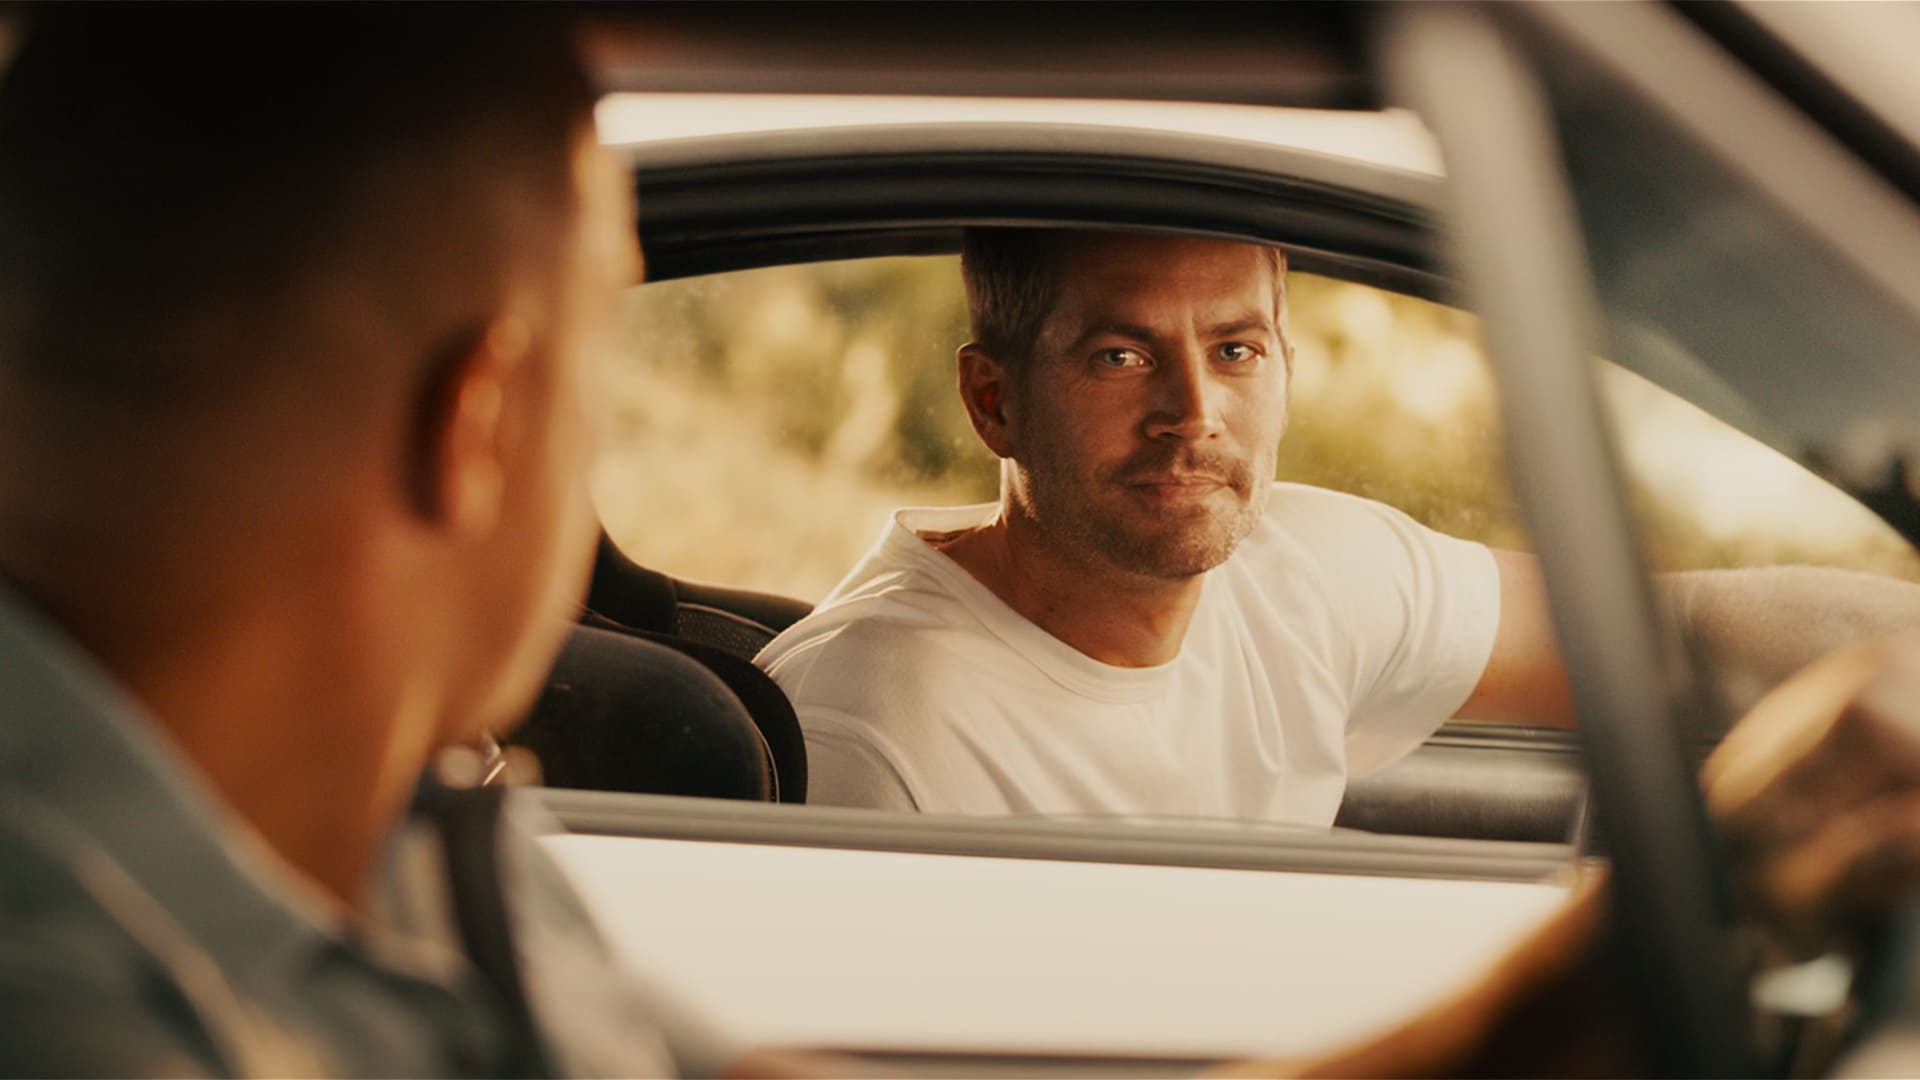 Imagen de la película "Fast &amp; Furious 7"